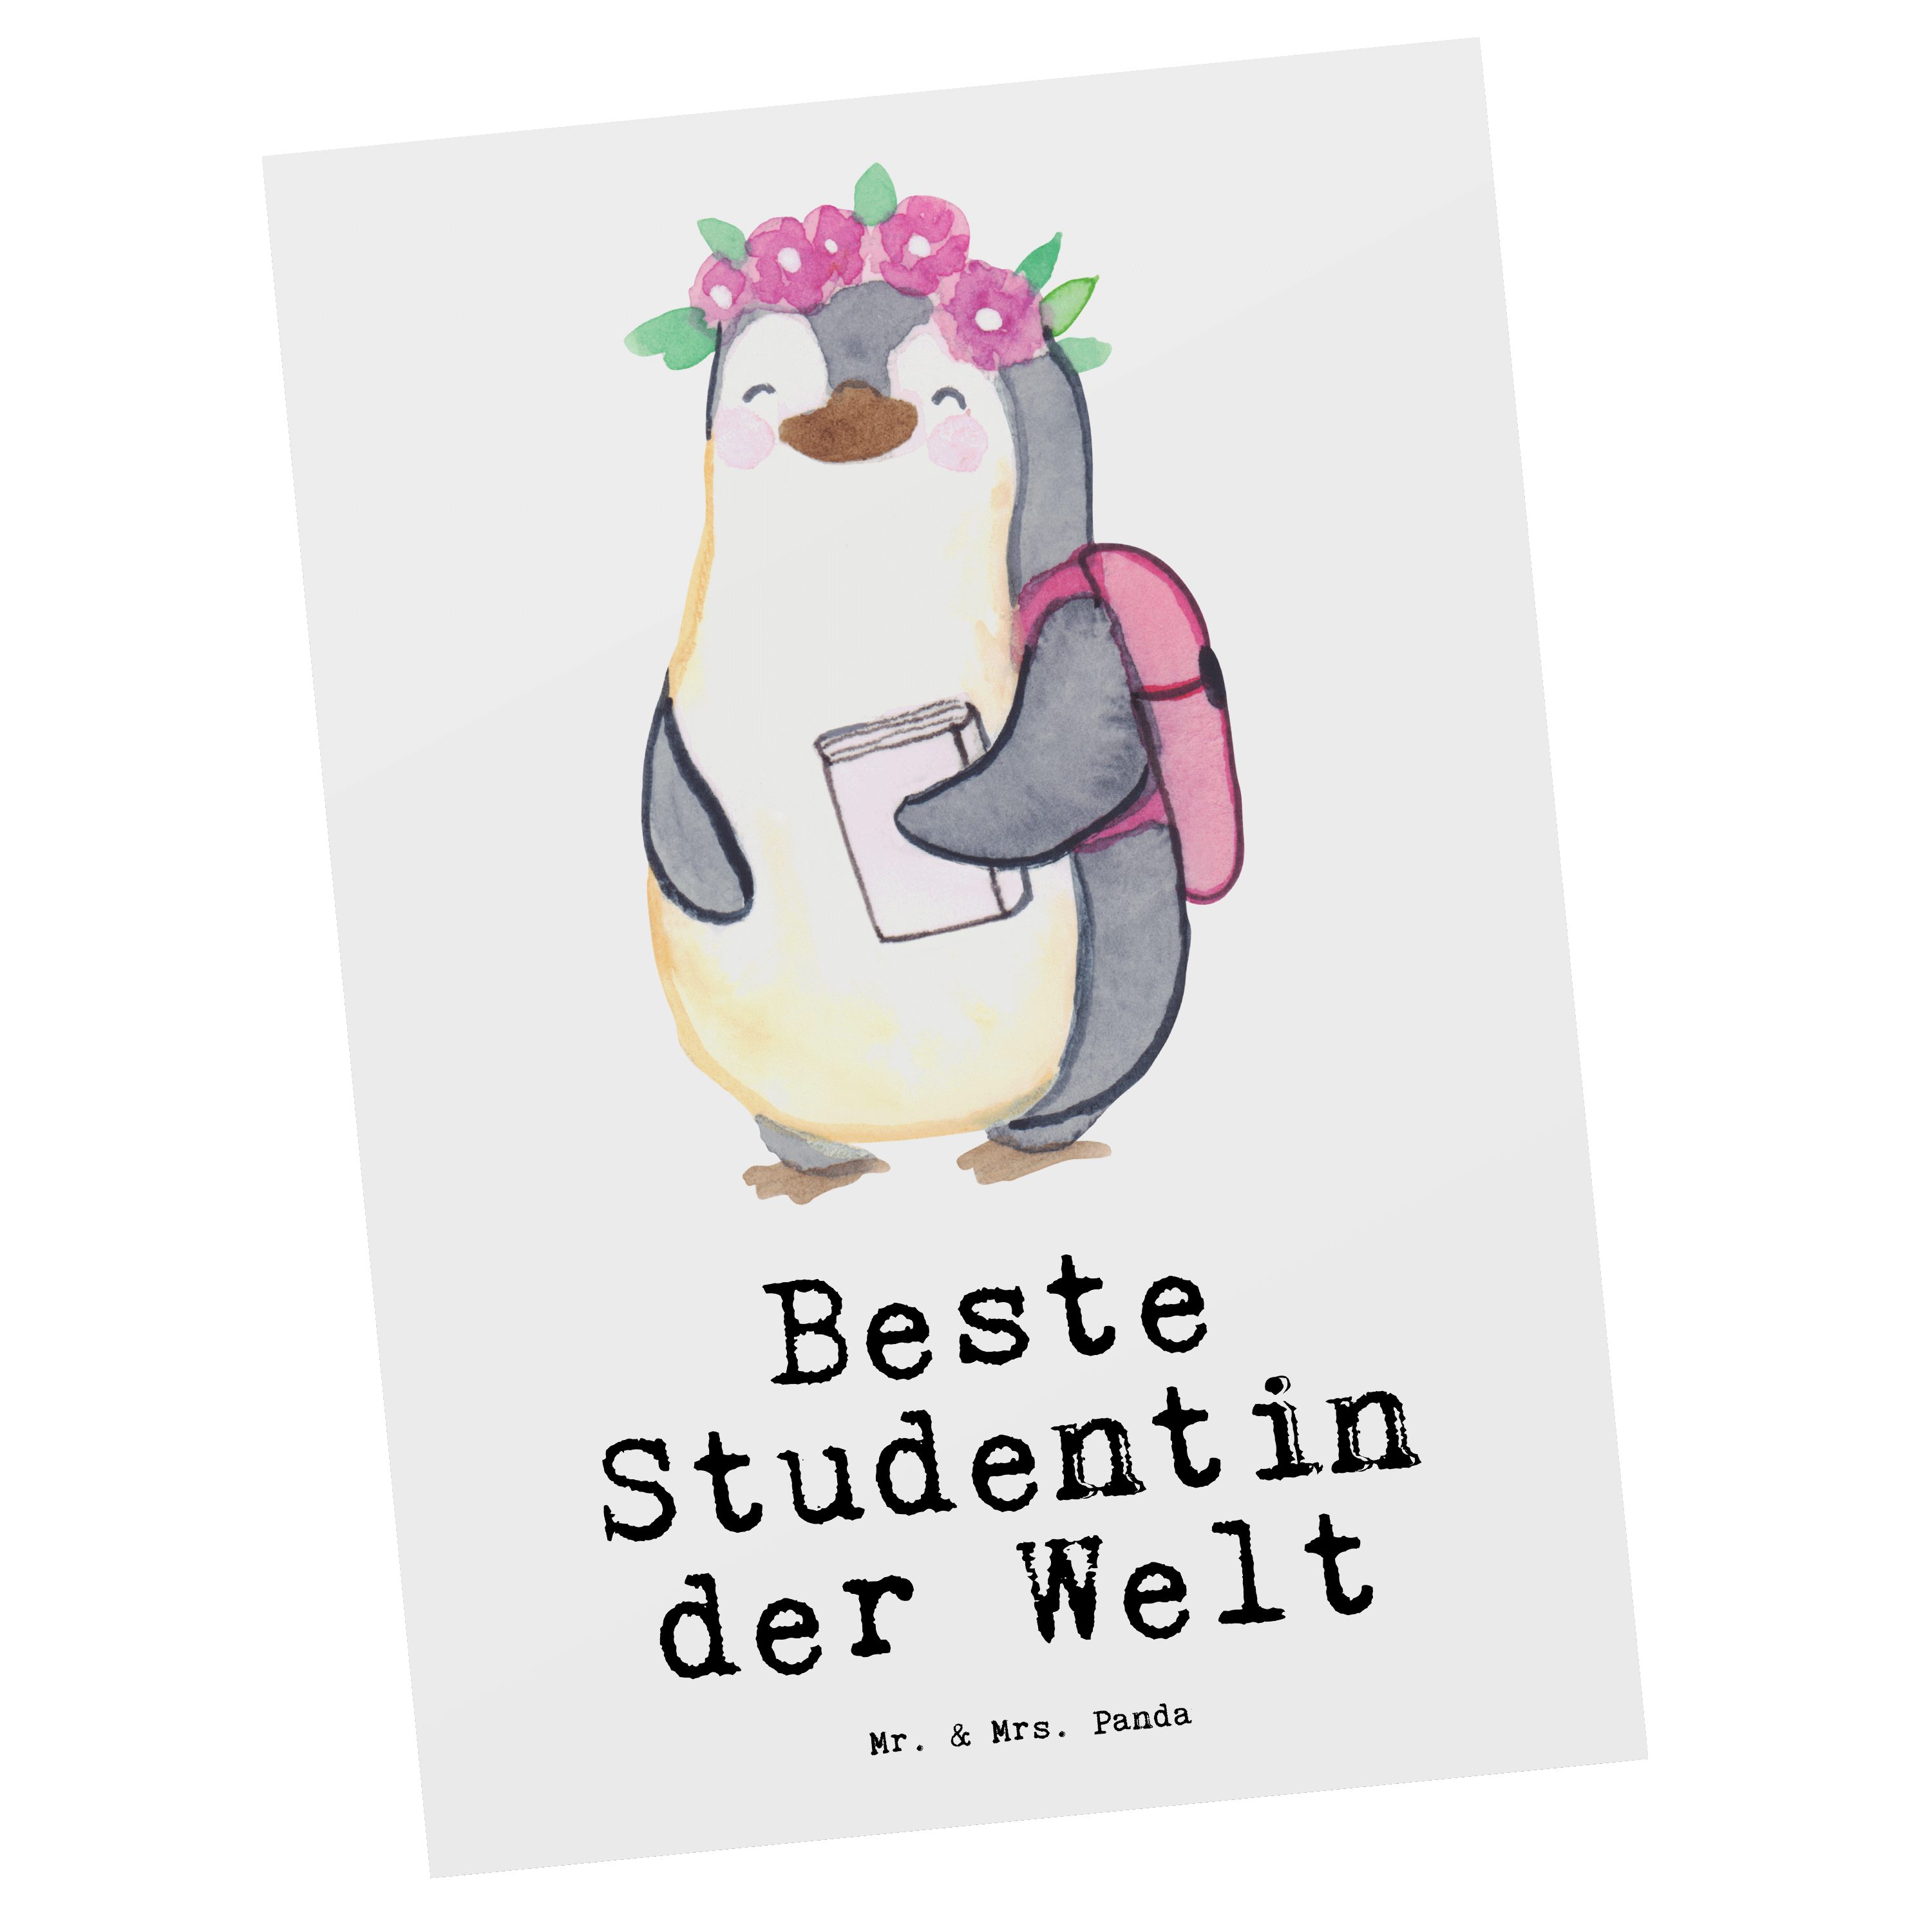 Mr. & Mrs. Panda Postkarte Pinguin Beste Studentin der Welt - Weiß - Geschenk, Mitbringsel, Geburtstagsgeschenk, Hochschule, Grußkarte, Karte, Uni, Einladung, Geschenktipp